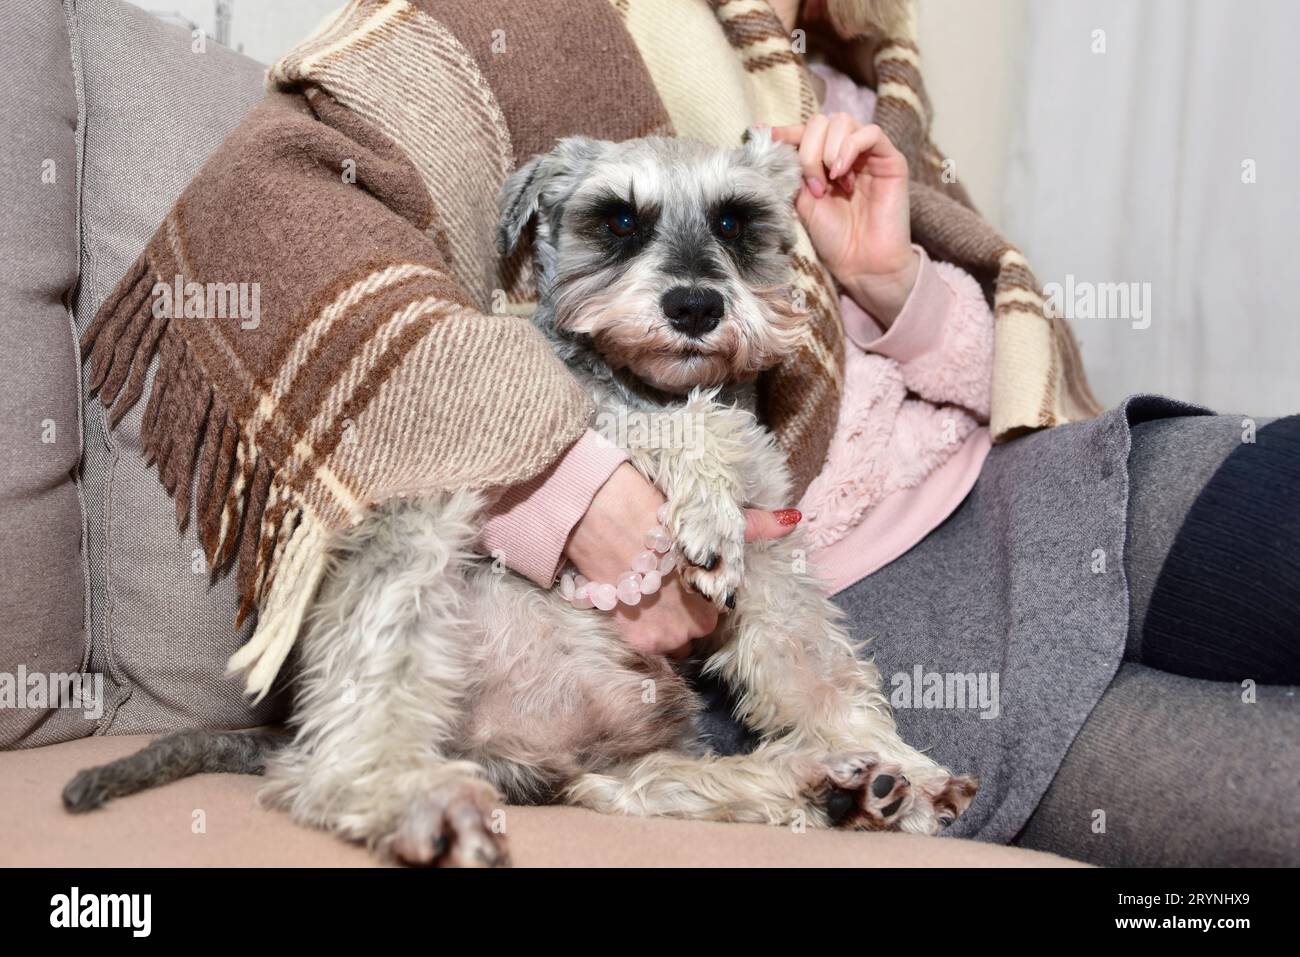 Chien gris assis sur un canapé et regarde sa maîtresse bien-aimée, les mains féminines caressent un chien heureux. Banque D'Images